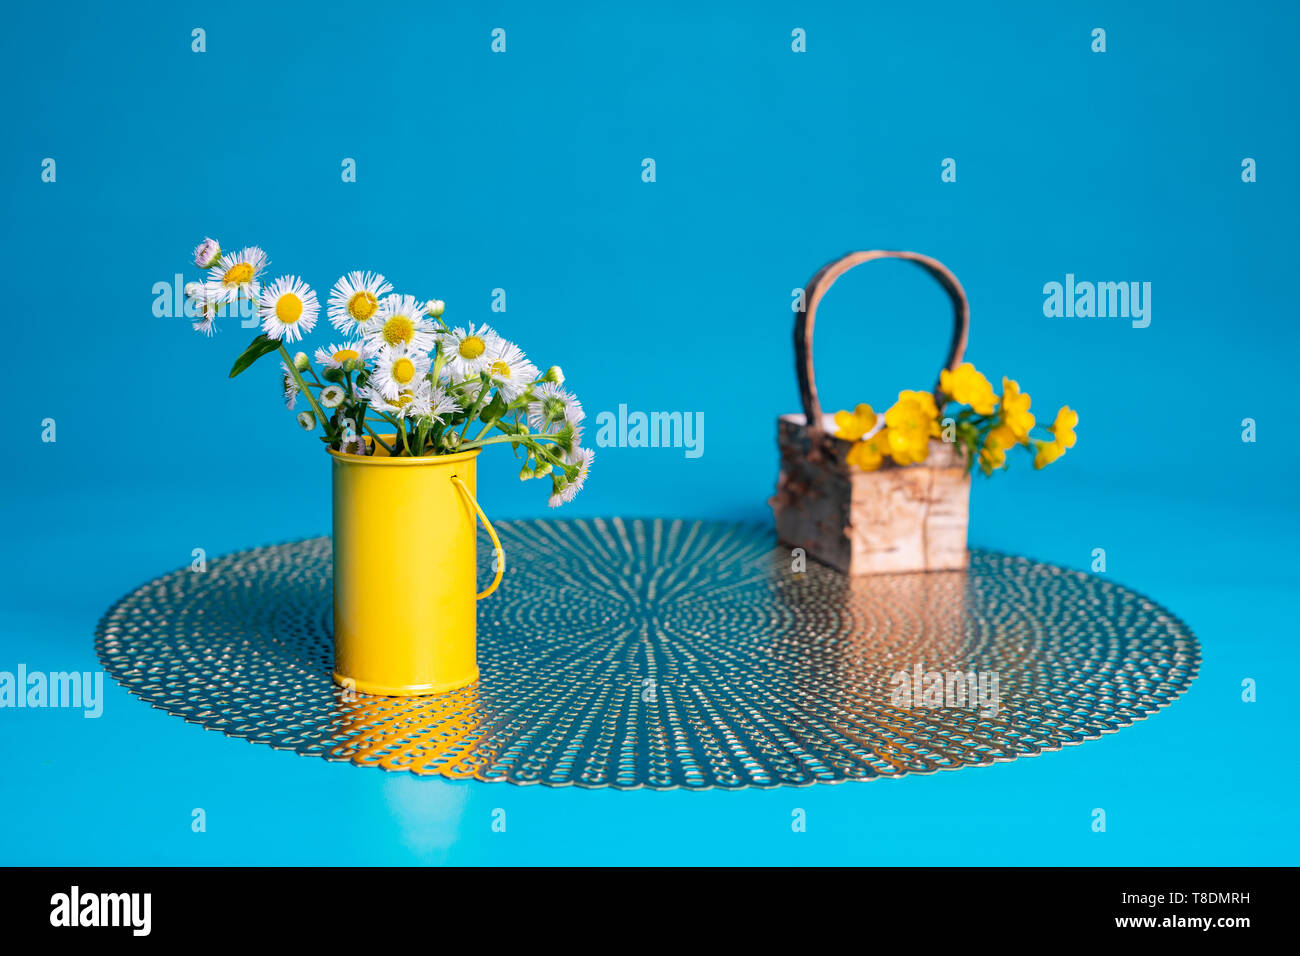 Prairie fleabane Wildblumen in einem kleinen gelben Zylinder Vase. Haarige buttercup Blumen liegen in einem kleinen Korb auf einem TISCHSET. Teal Blue blackground. Stockfoto